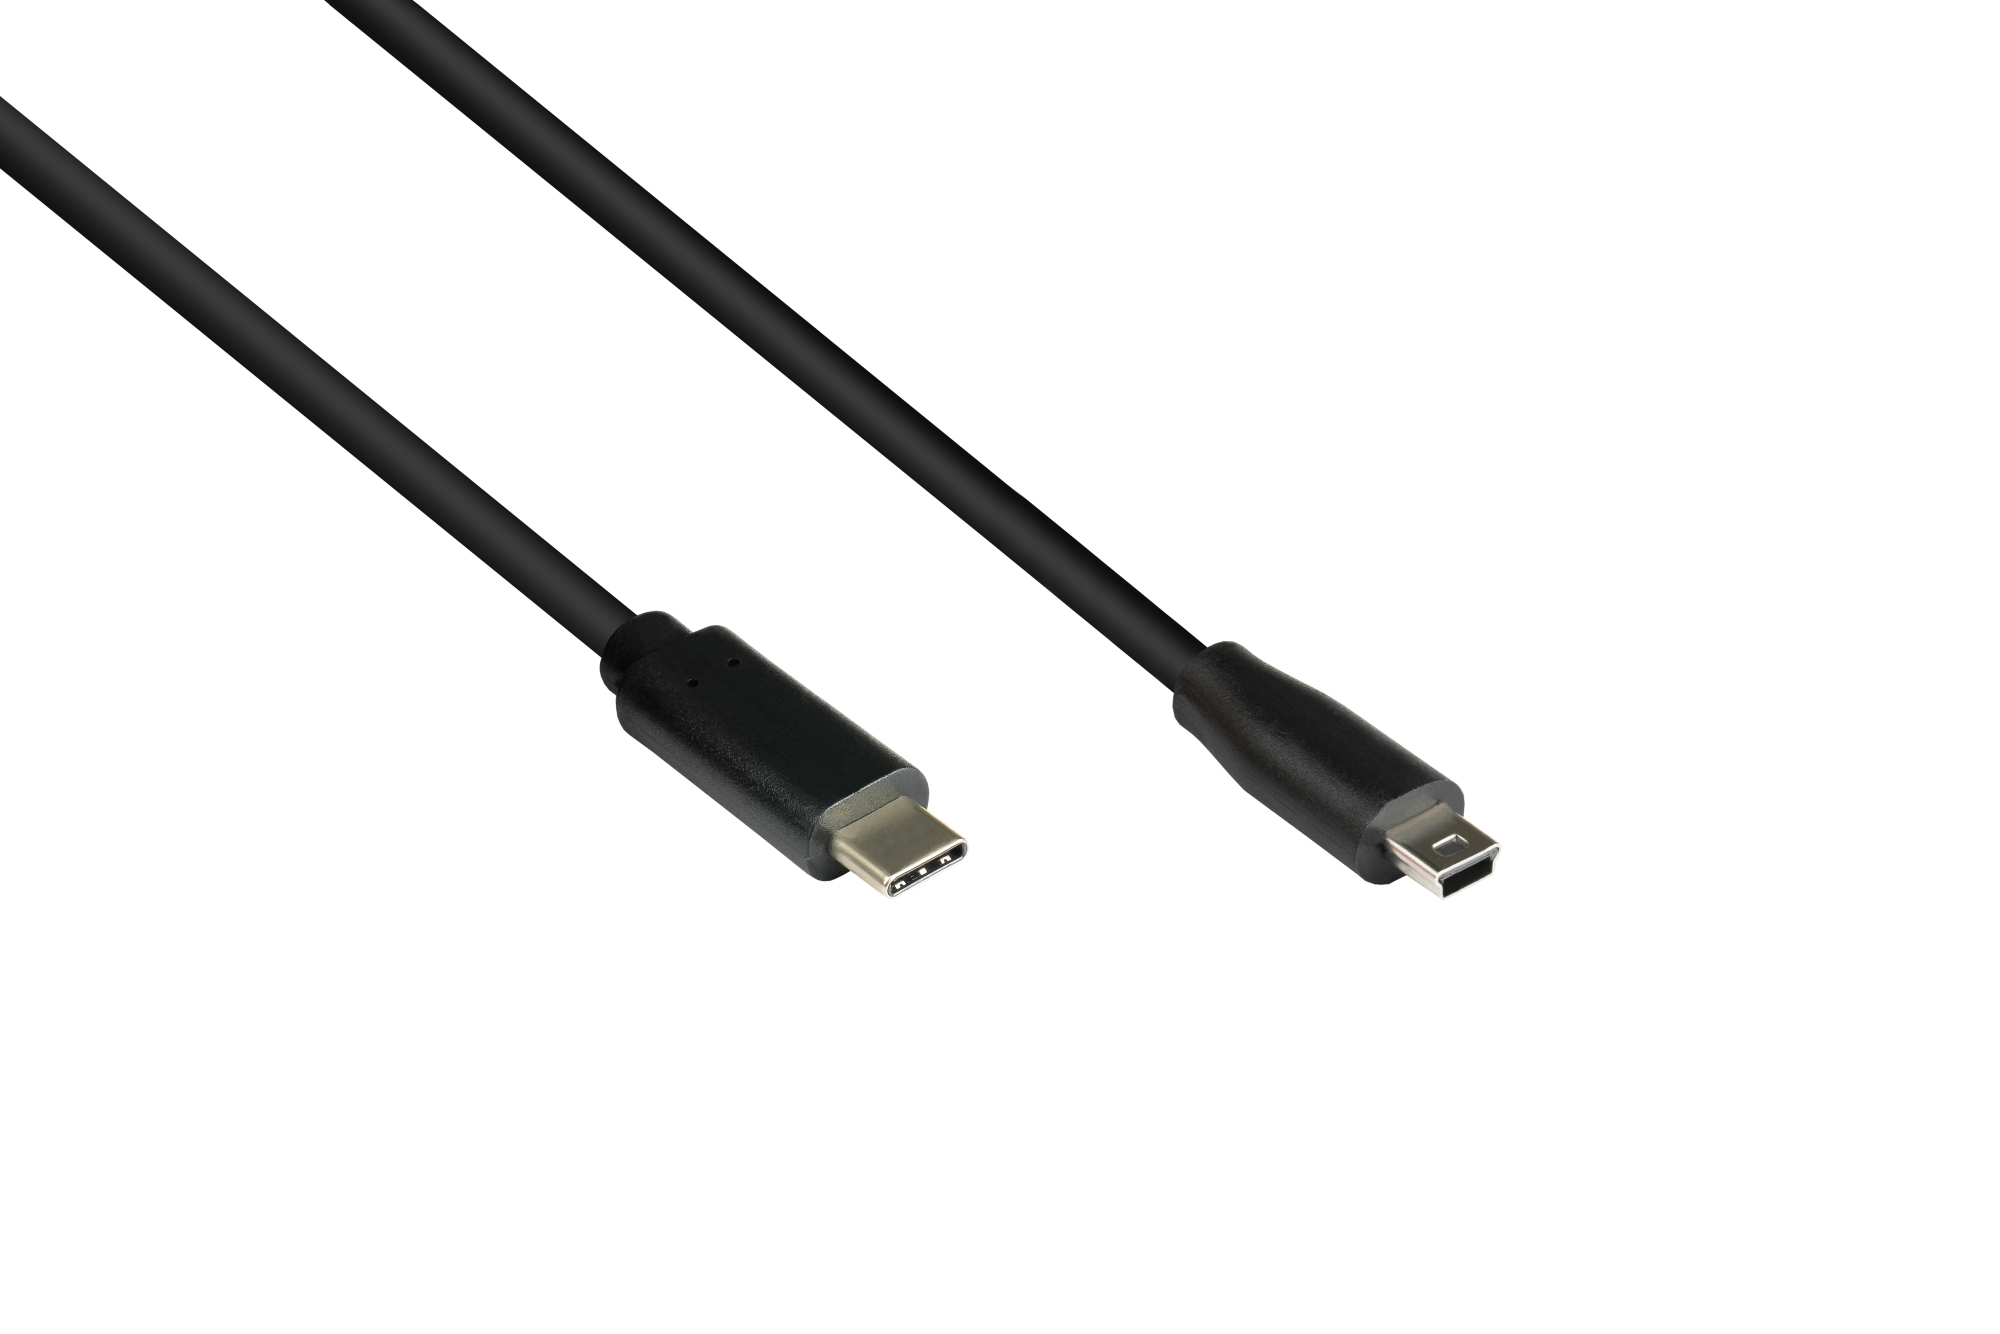 Anschlusskabel USB 2.0, USB-C™ Stecker an Stecker Mini B 5-pin, schwarz, 1m, Good Connections®